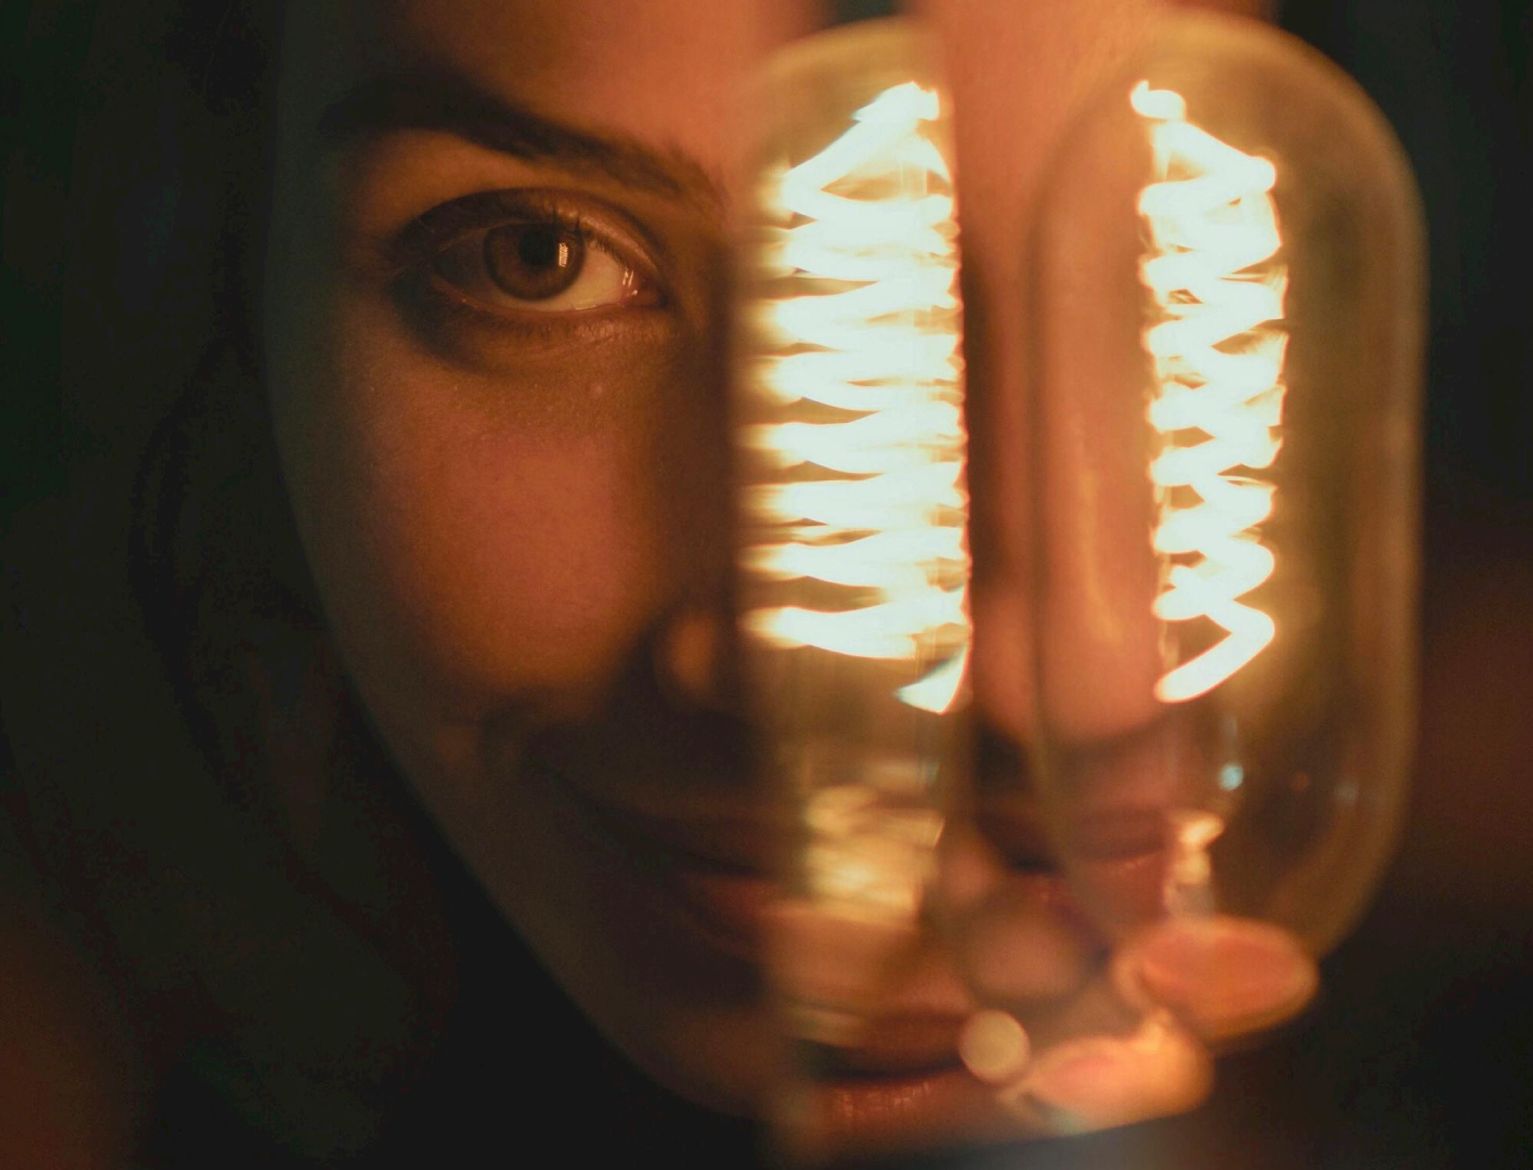 il volto di una persona illuminato da una lampadina